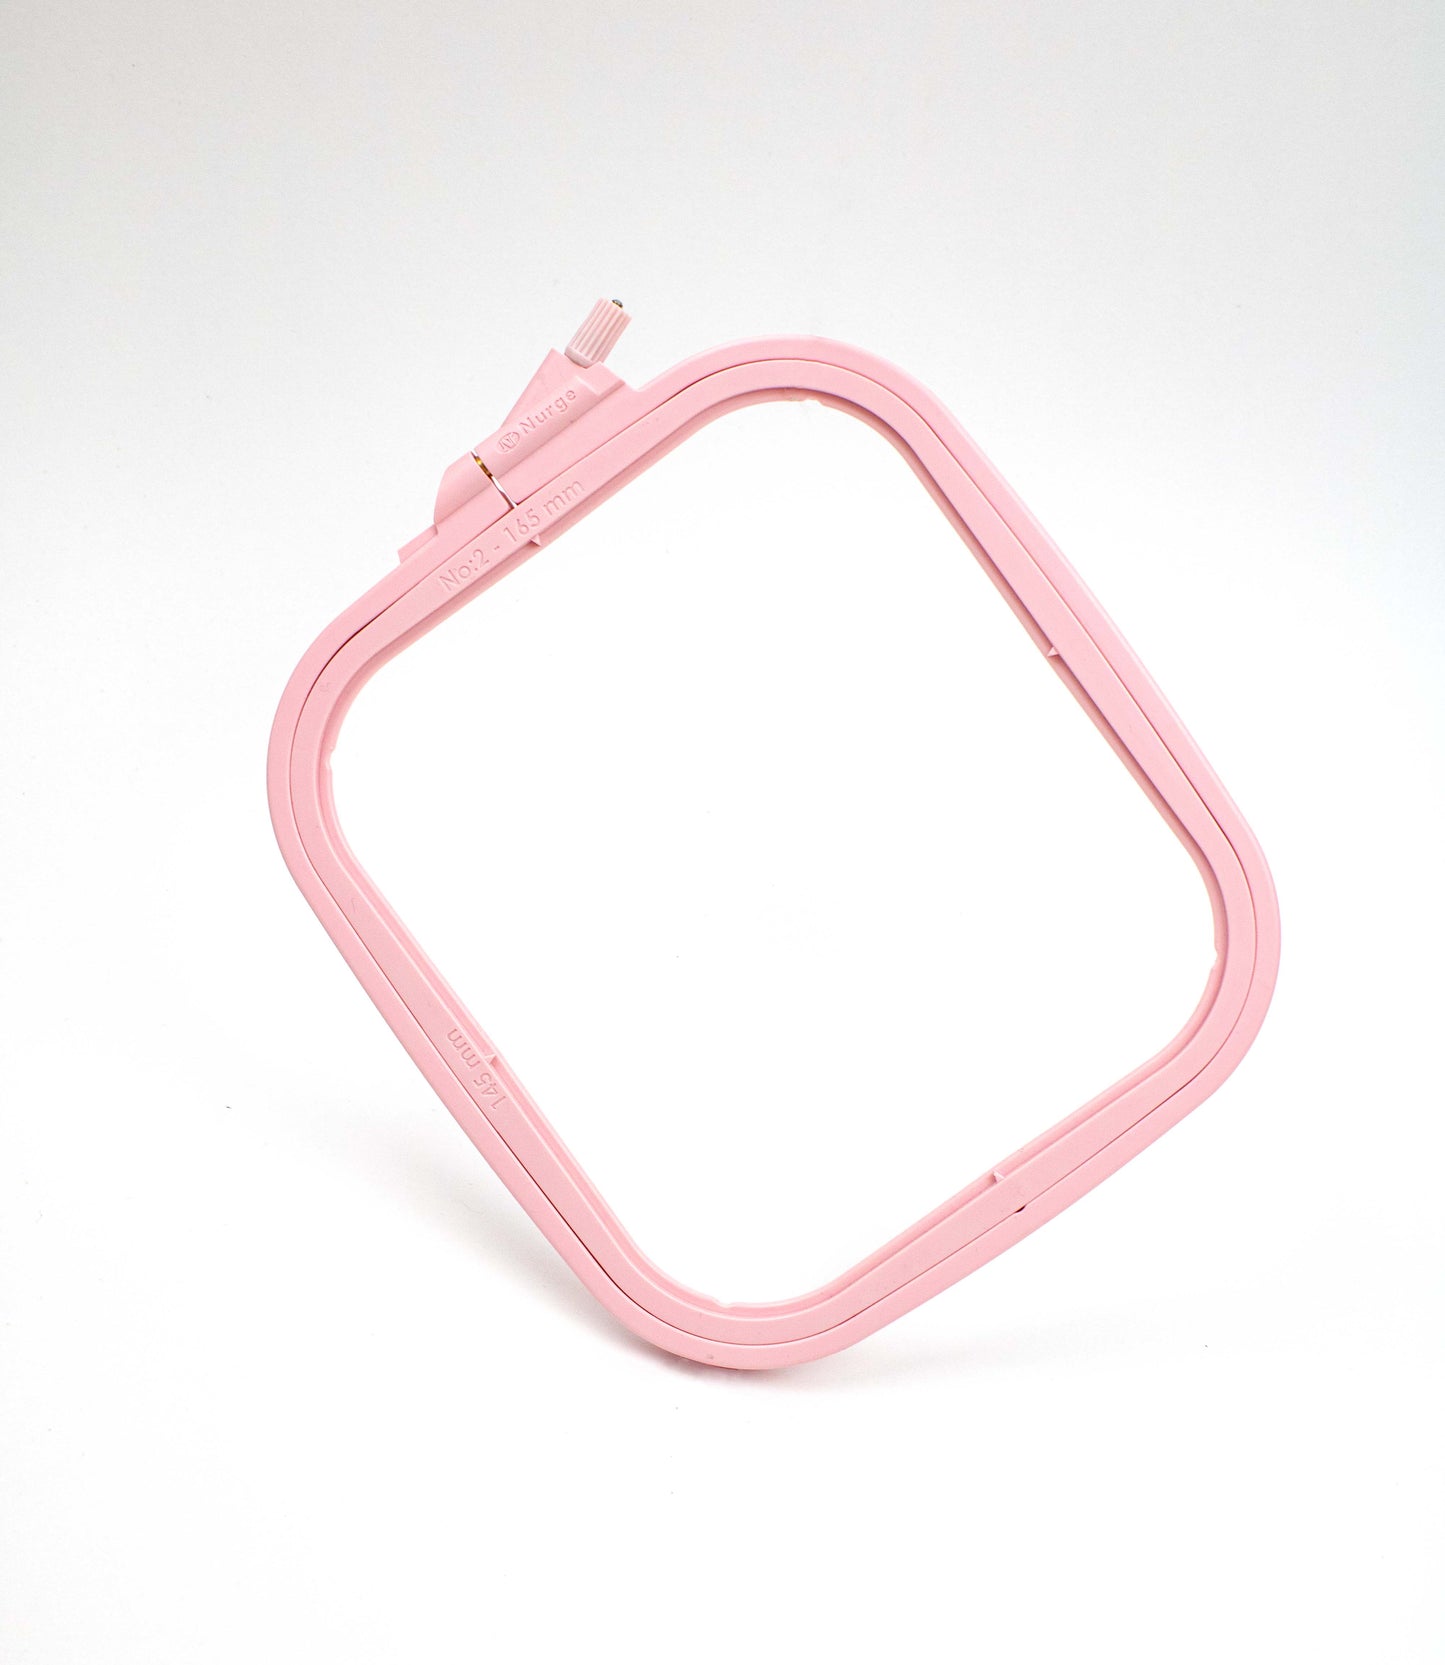 Cross Stitch Square Hoop, Pink - Nurge Embroidery Hoop